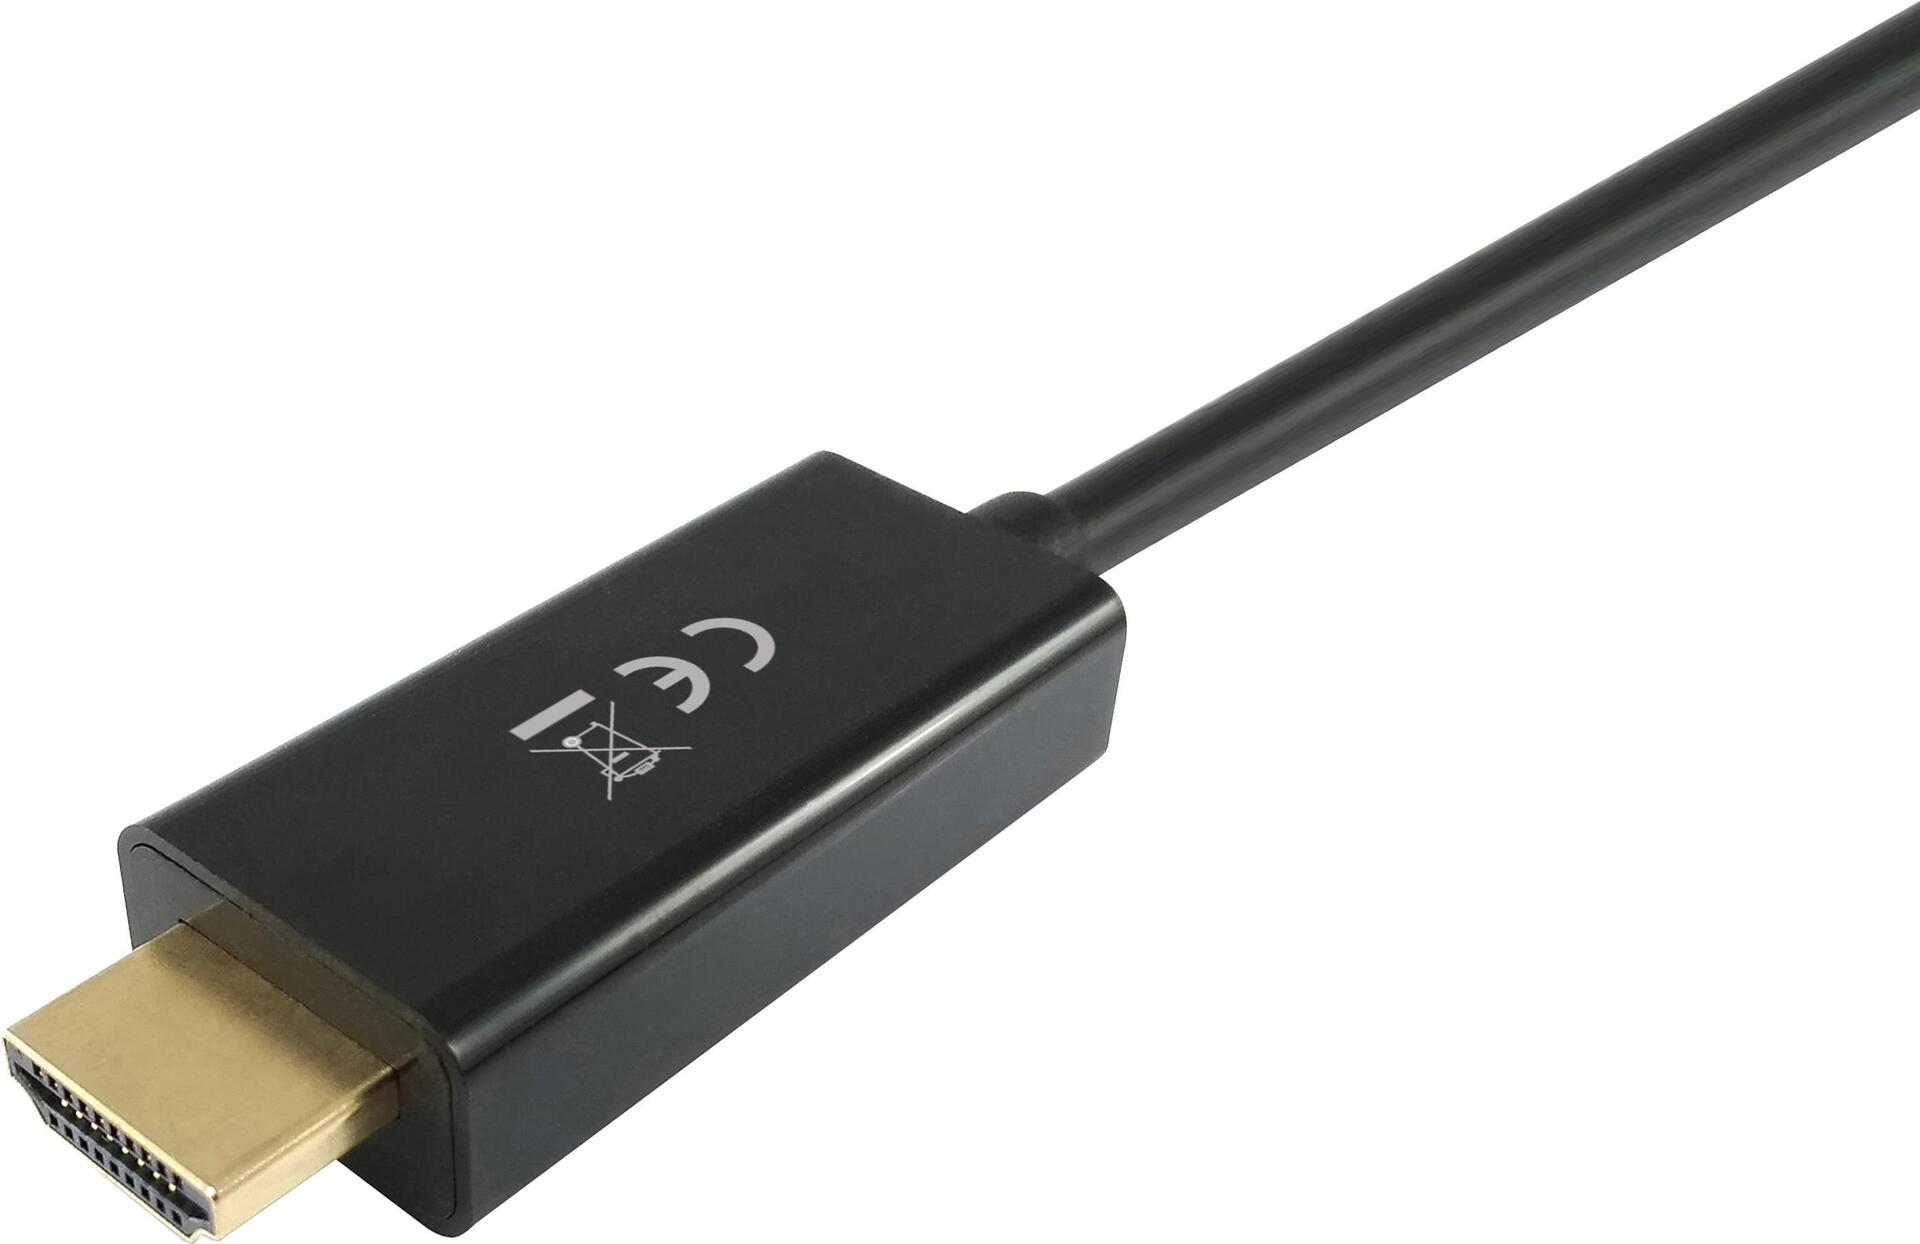 Equip Displayport Adapter -> HDMI Male/Male 3m schwarz (119391)